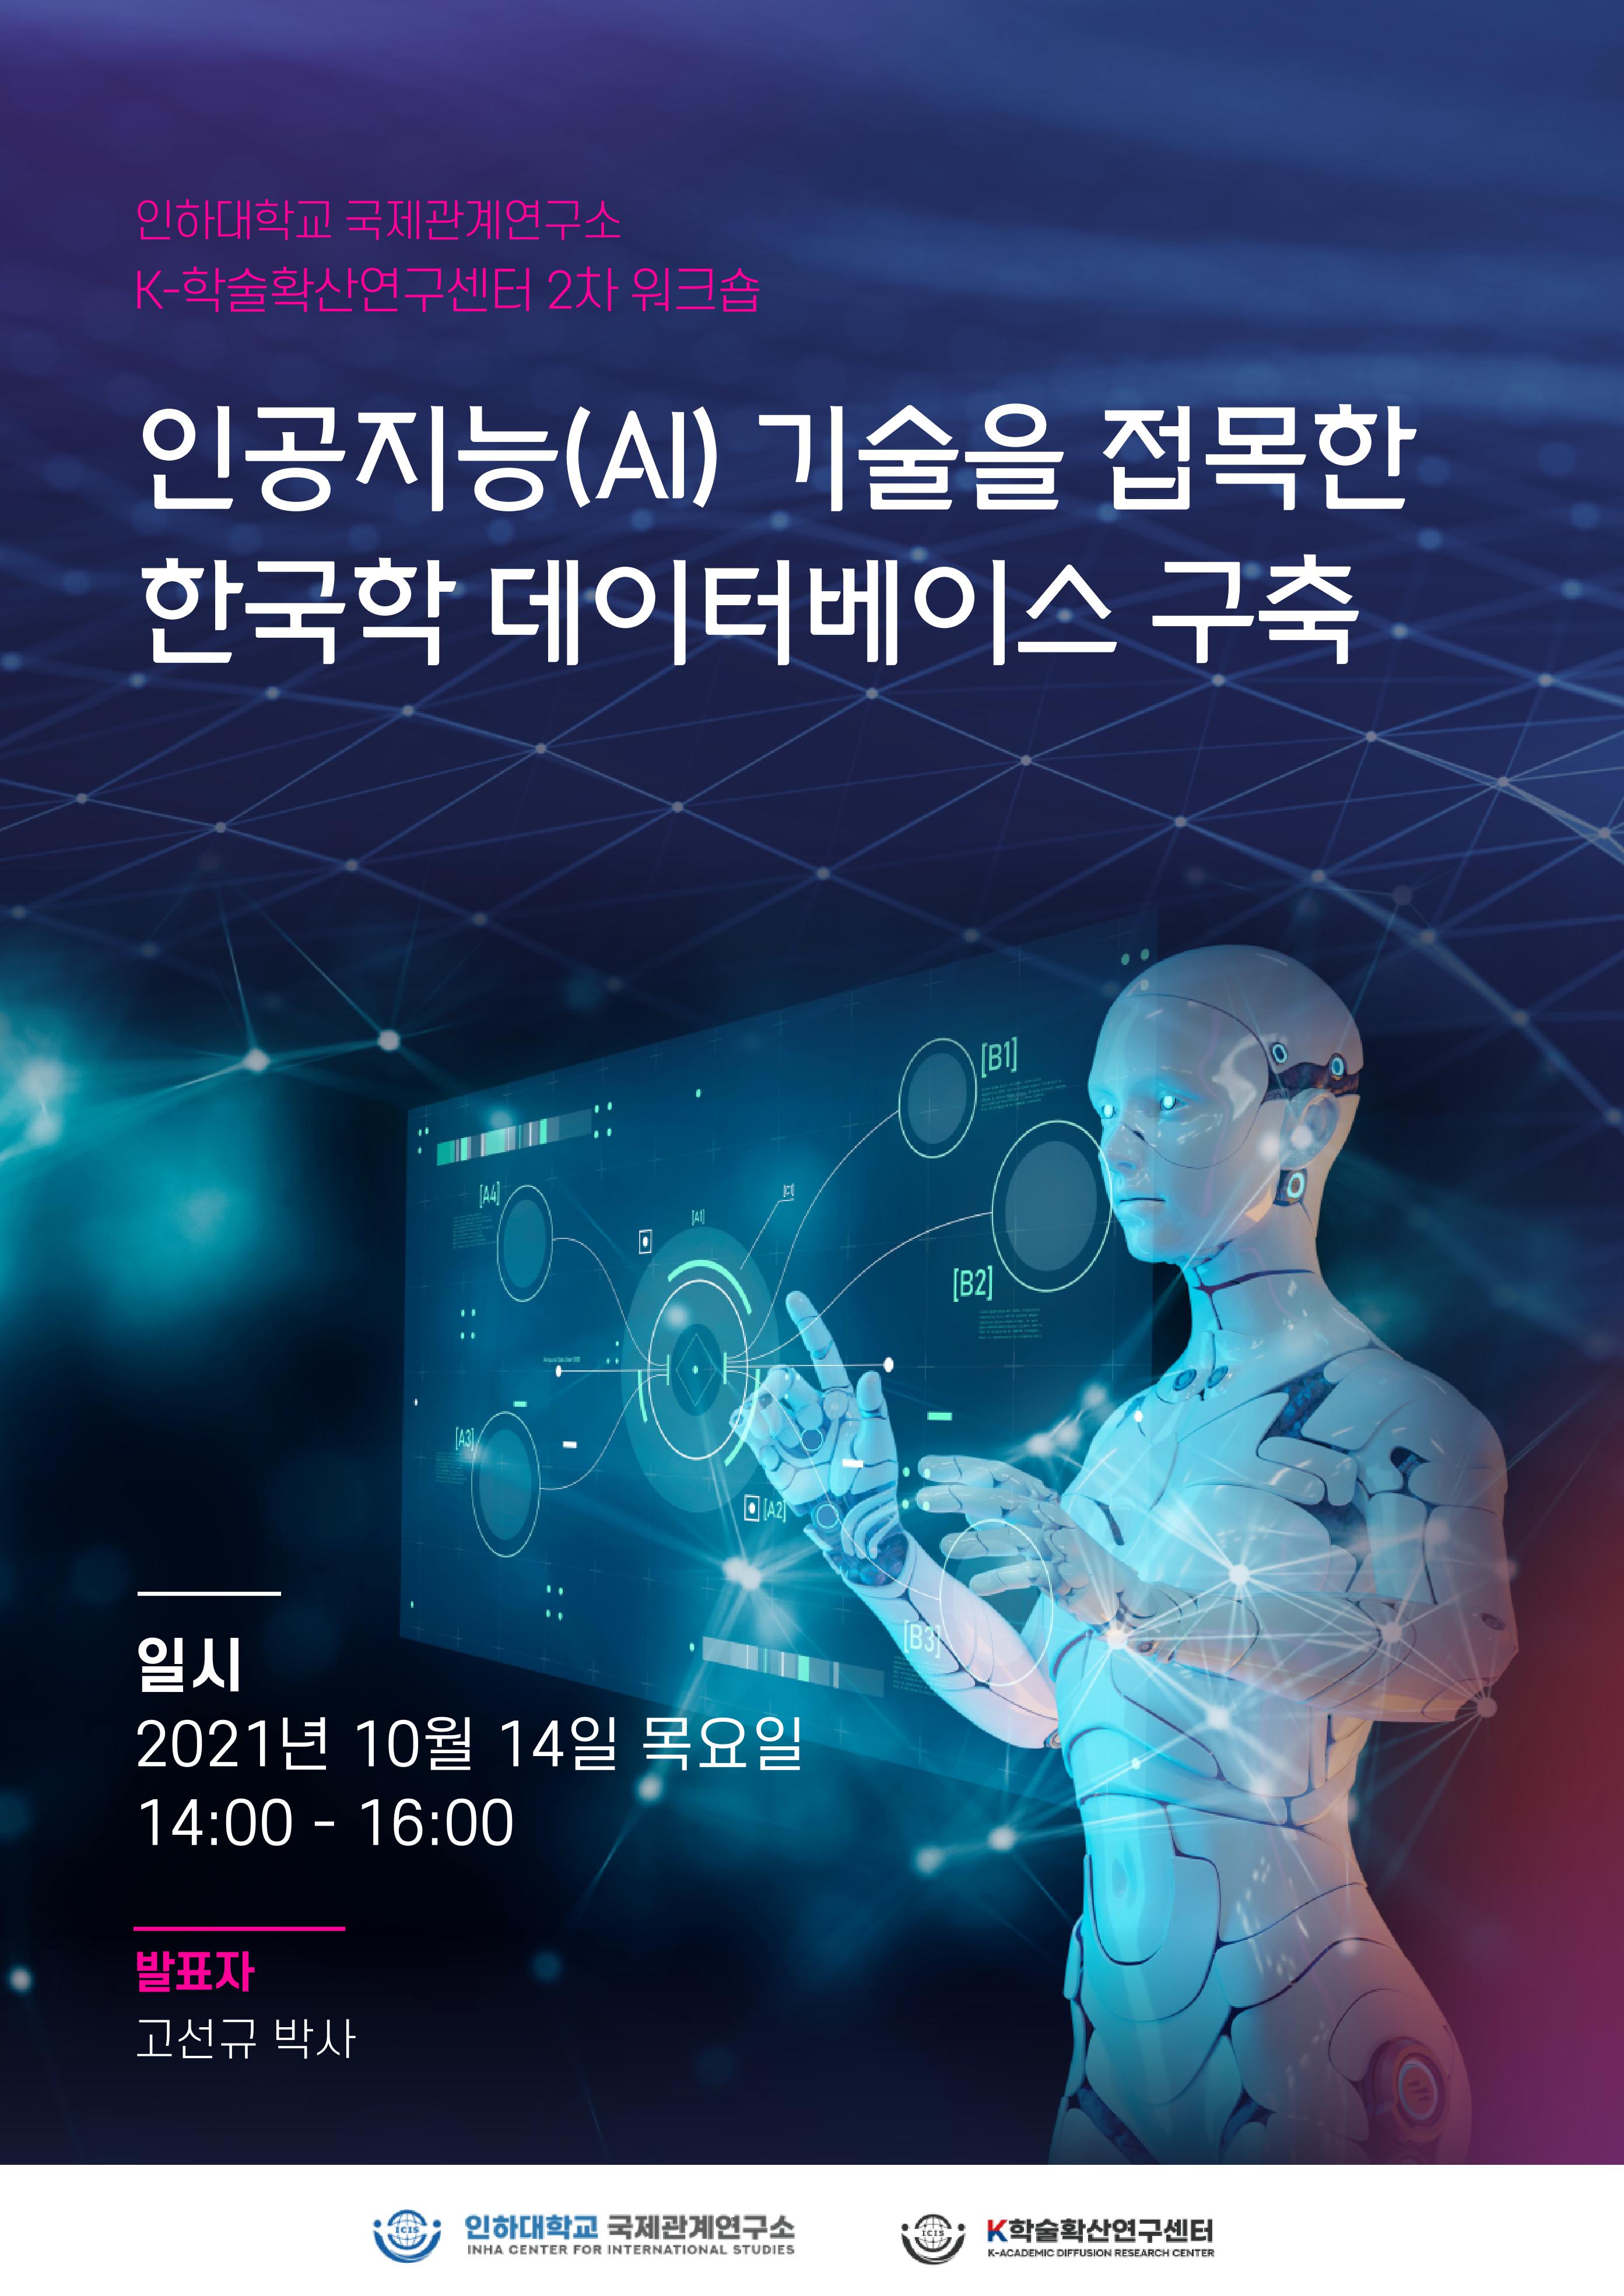 제2차 워크숍 - 고선규 박사 초청 워크숍 <인공지능(AI) 기술을 접목한 한국학 데이터베이스 구축>                                 썸네일